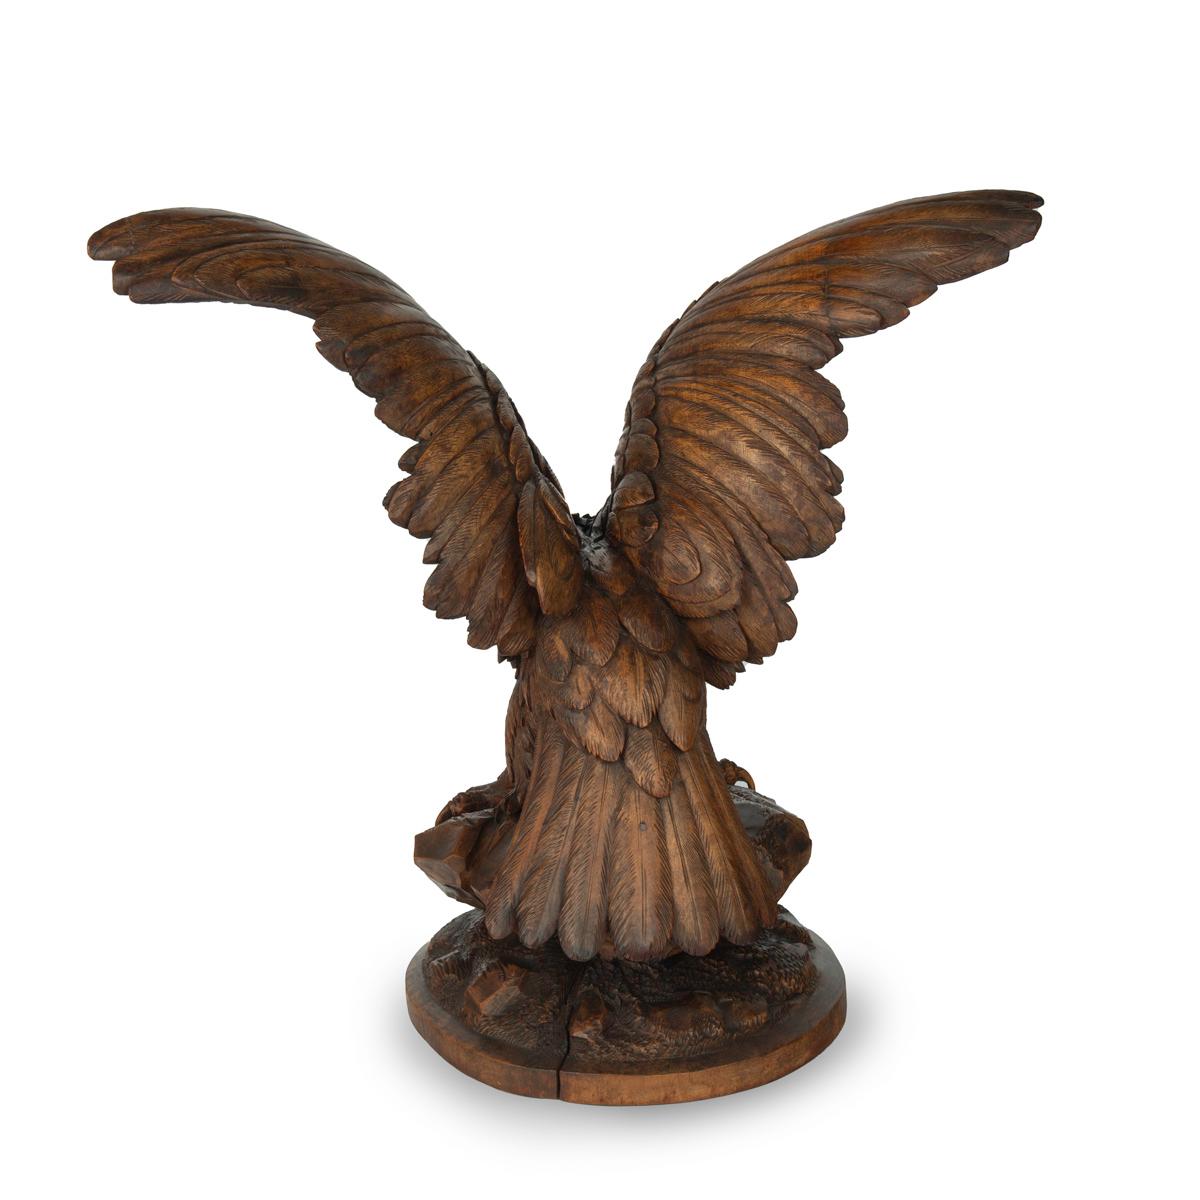 Grande sculpture en bois de noyer de la Forêt-Noire représentant un aigle, perché sur une chute de rochers, accroupi, les ailes déployées et la tête tournée vers la gauche, avec des détails tachés de noir sur les plumes et la tête.  yeux en verre